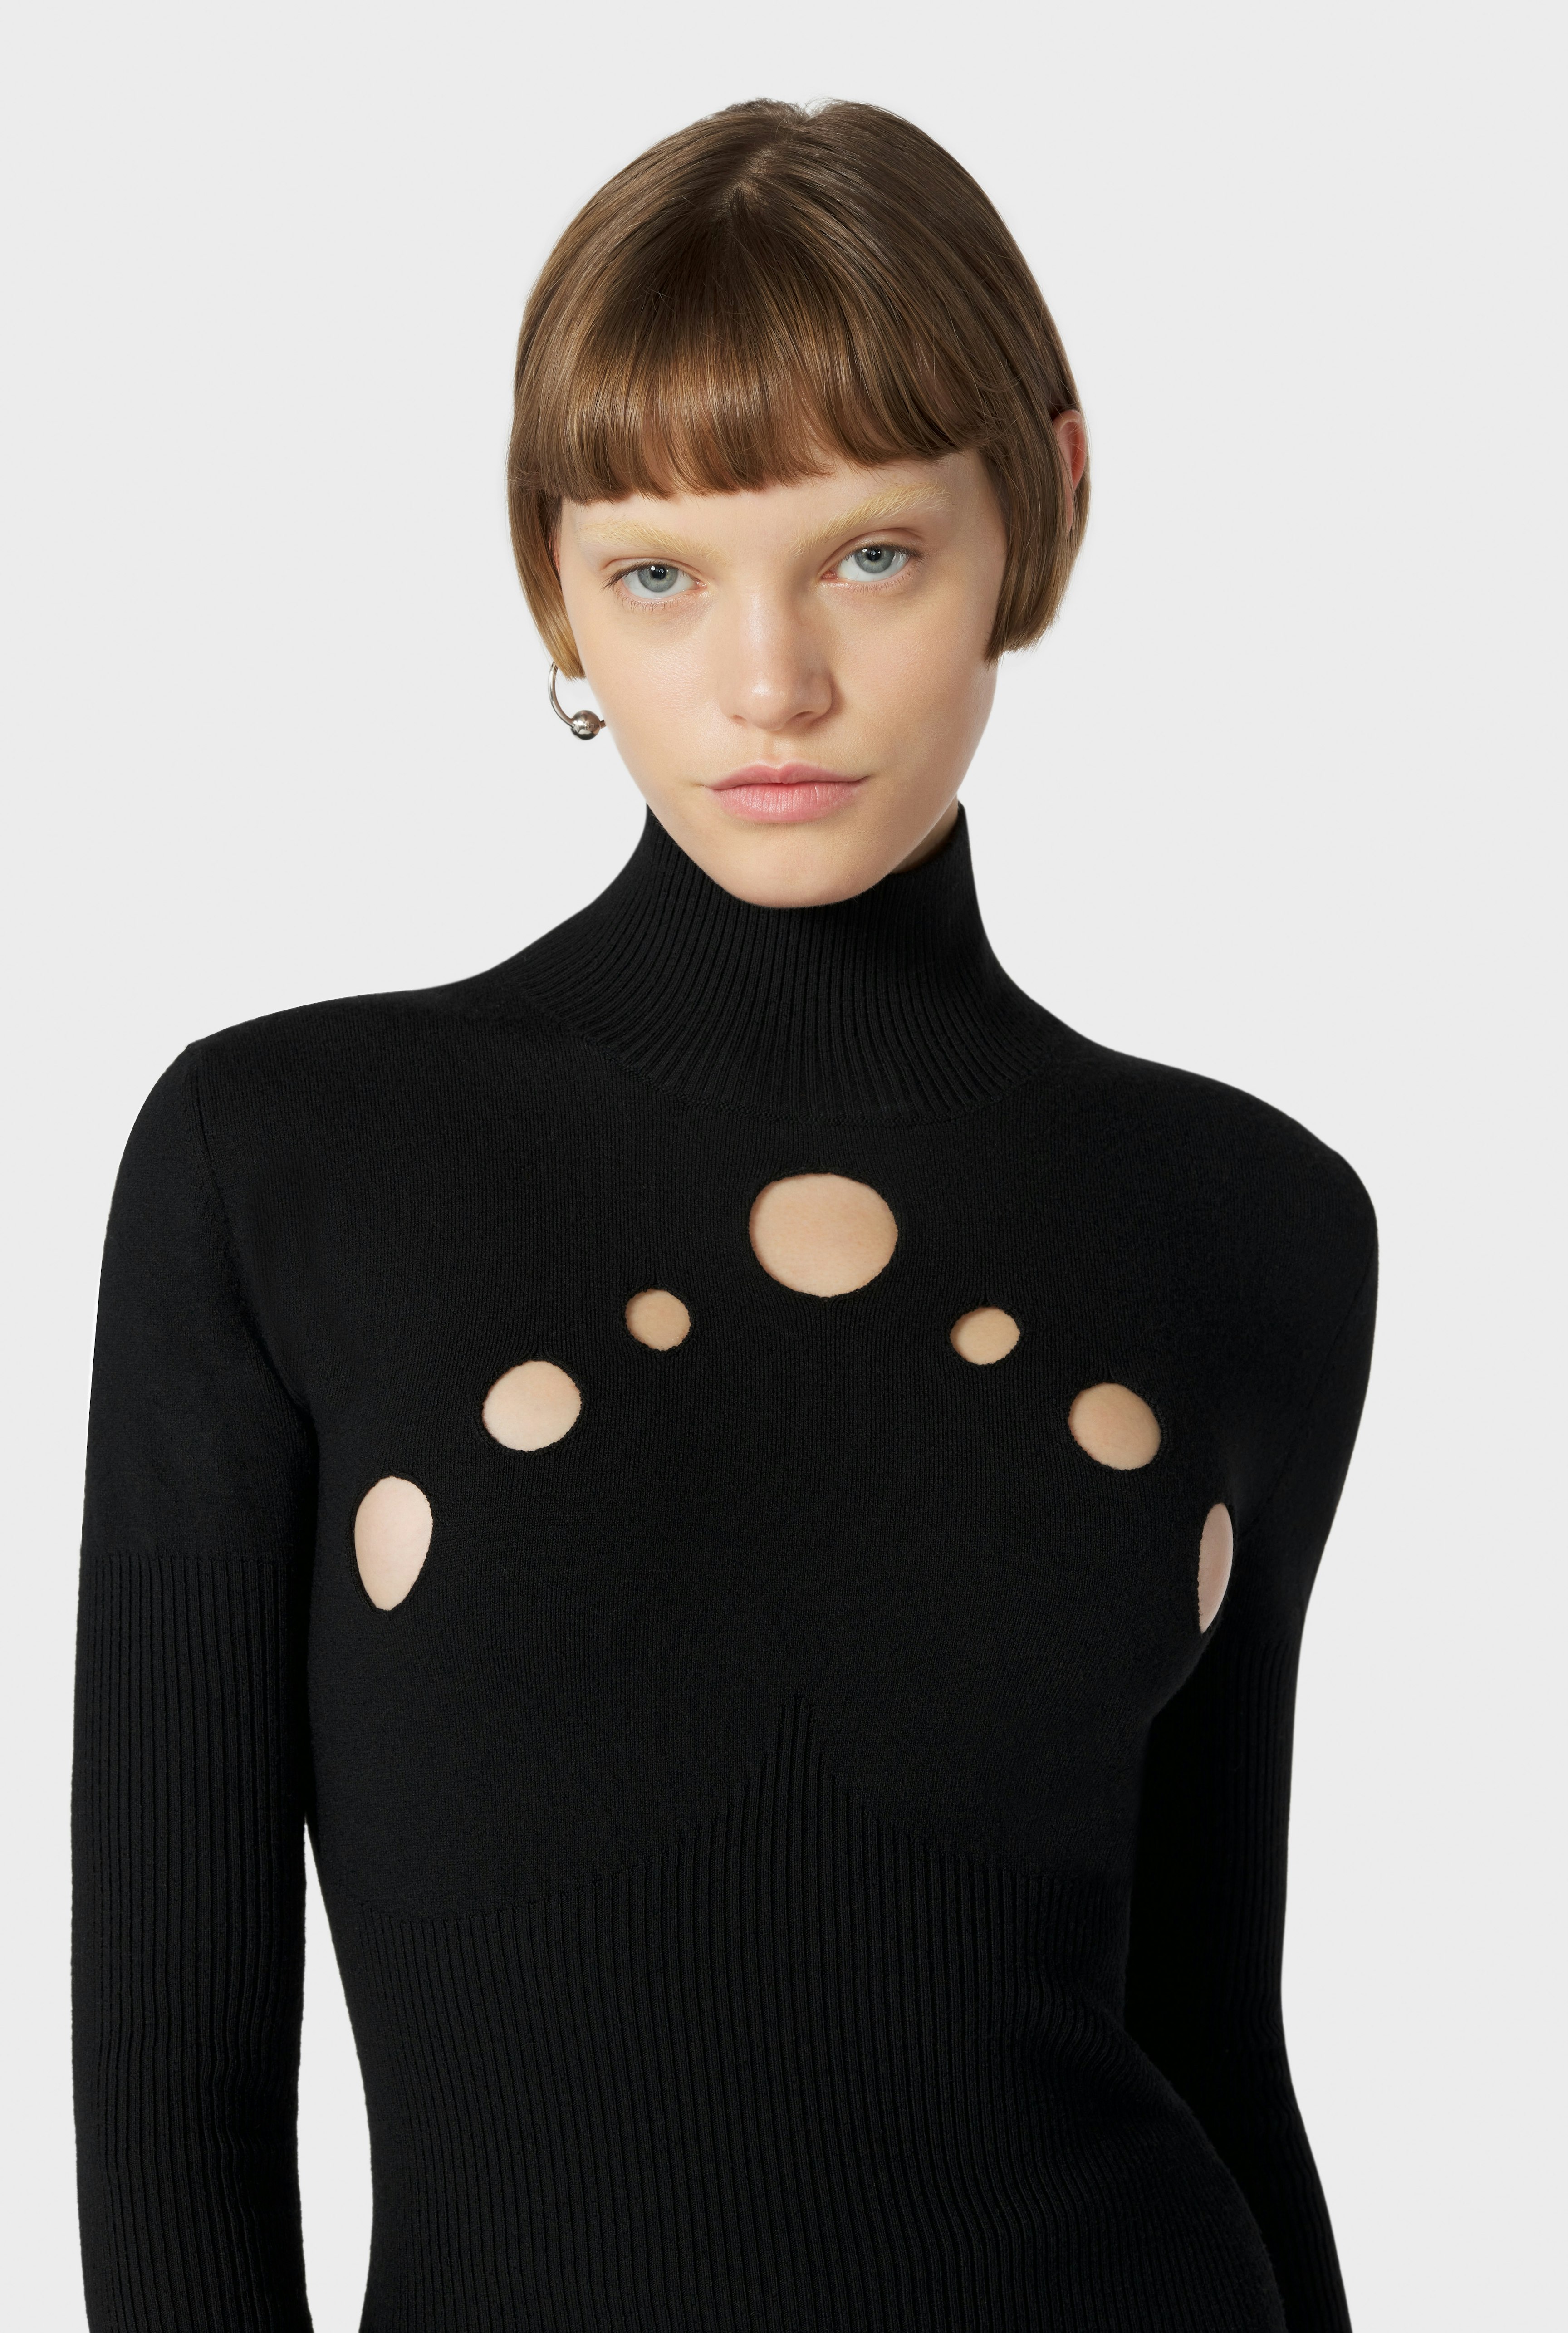 The Black Openworked Knit Sweater Jean Paul Gaultier